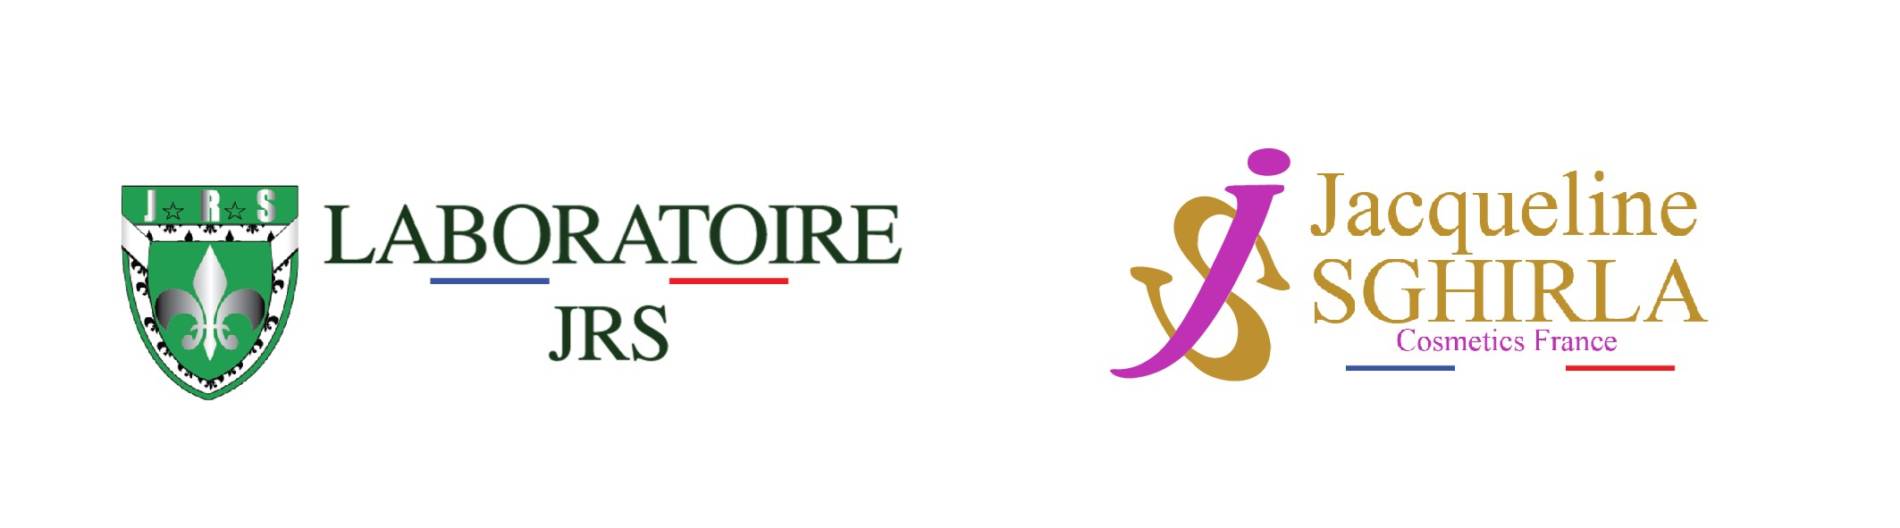 Laboratoire JRS cosmétique Jacqueline Sghirla France Logo